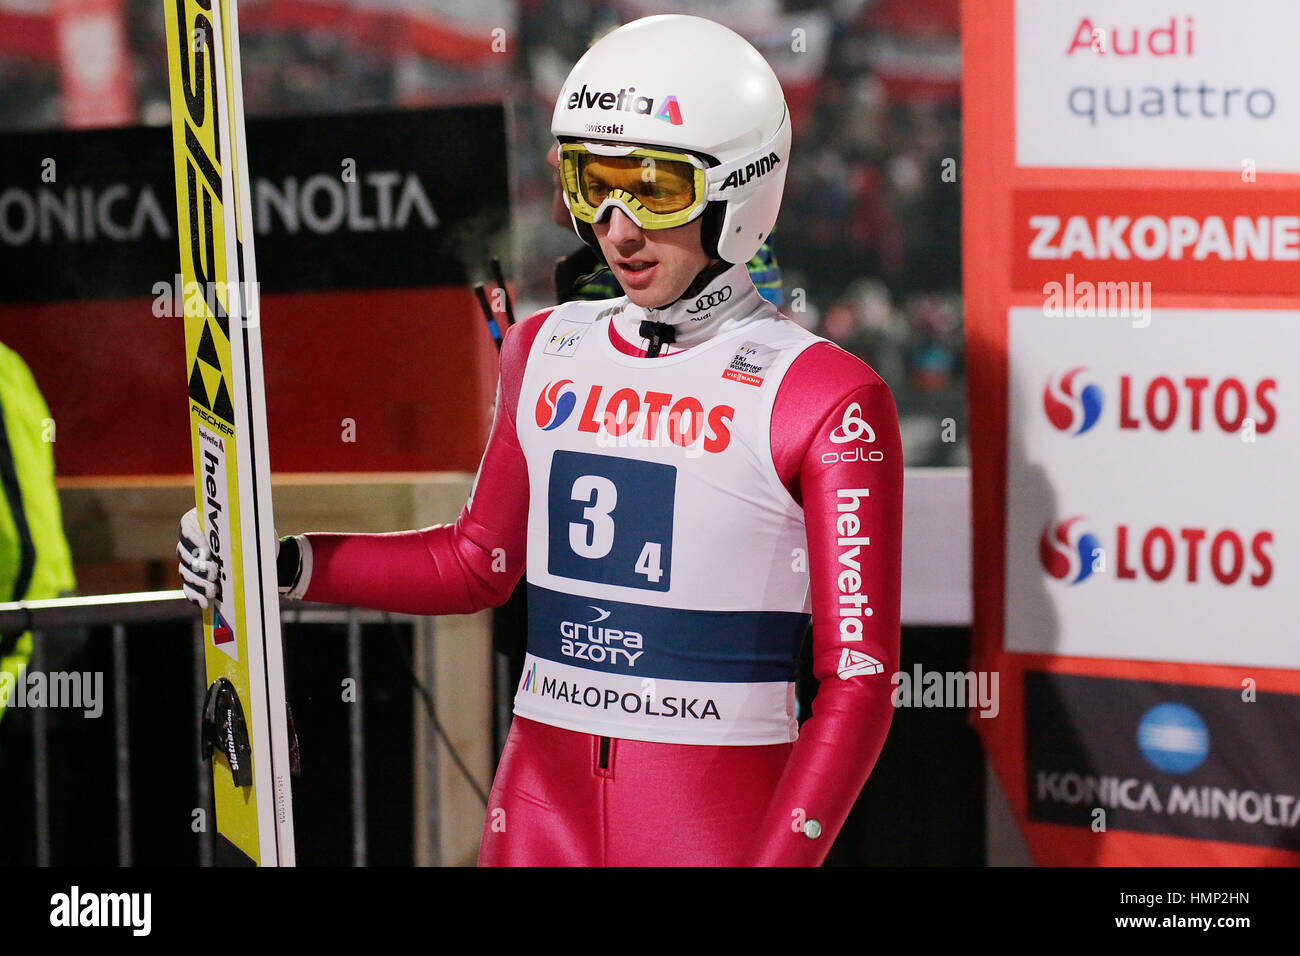 ZAKOPANE, POLAND - JANUARY 23, 2016: FIS Ski Jumping World Cup in Zakopane o/p Simon Ammann SUI Stock Photo